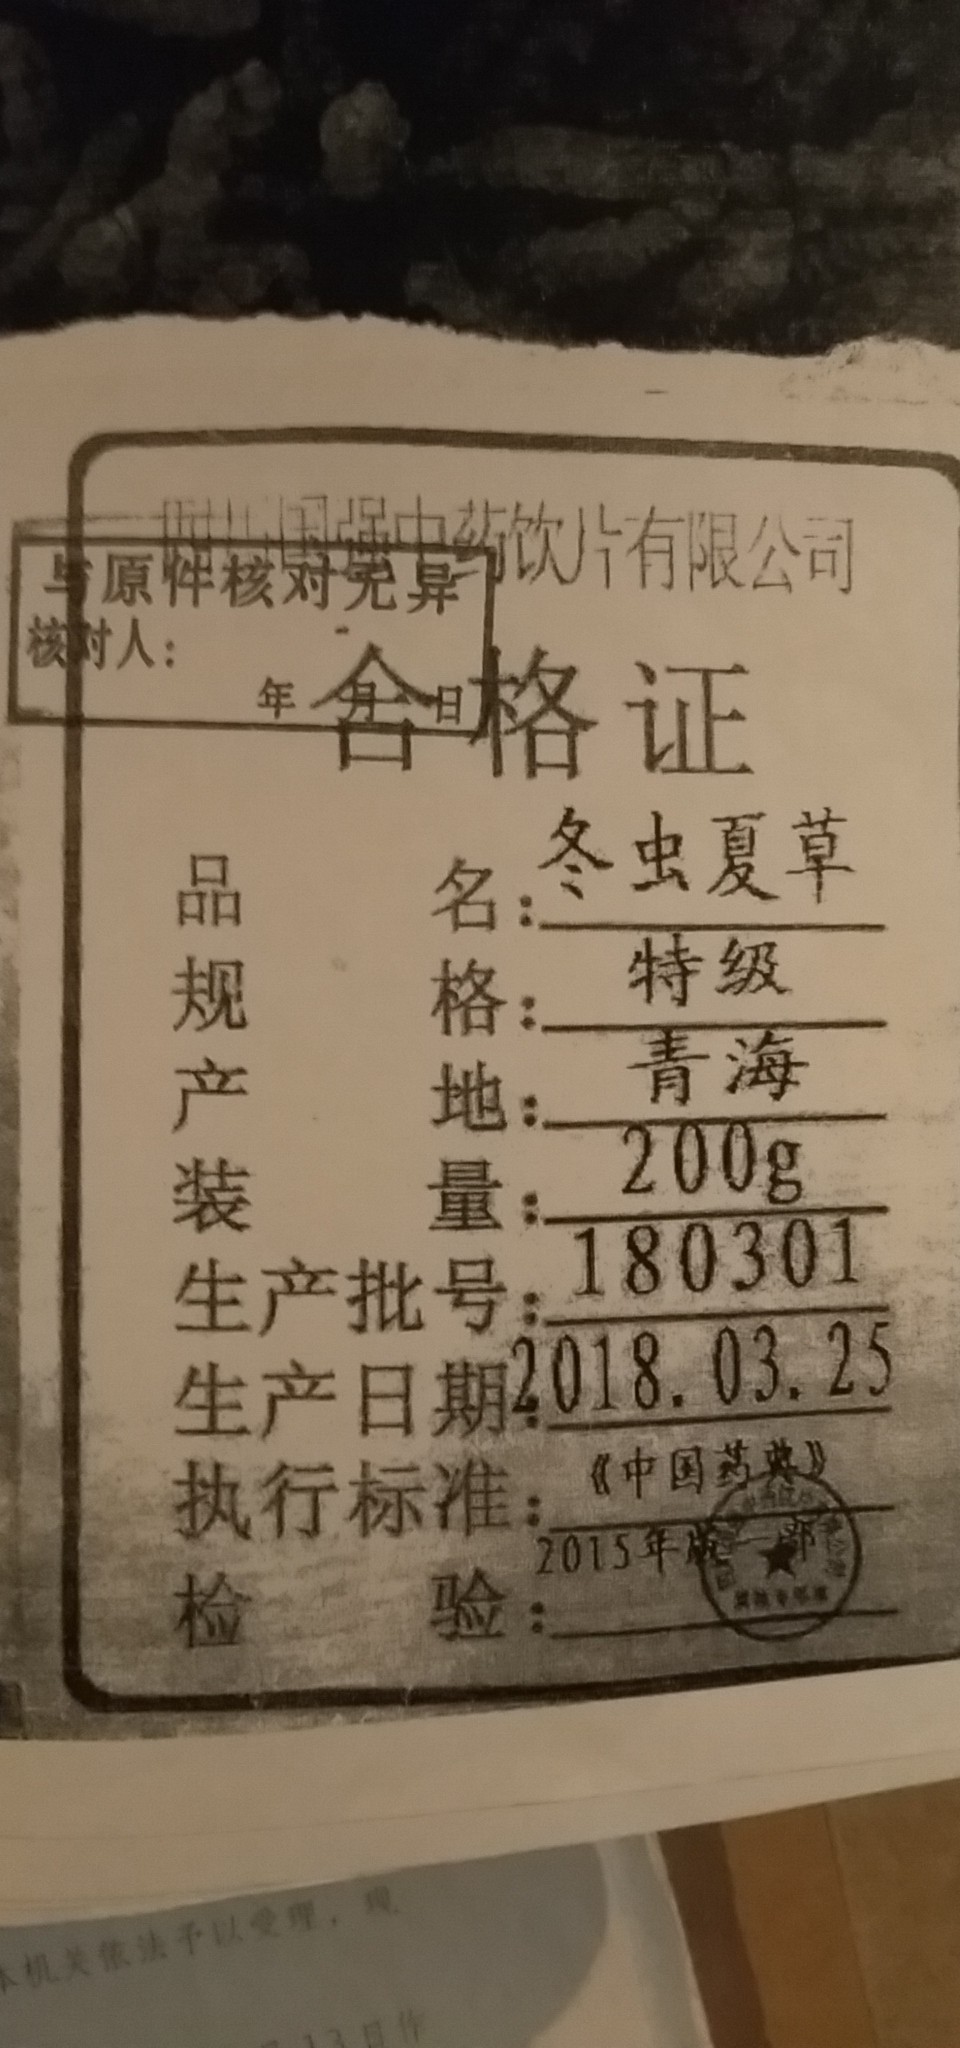 载有生产厂家“四川国强”的“合格证，李维称，购买当时，并未在散装虫草盒内看到这份合格证。